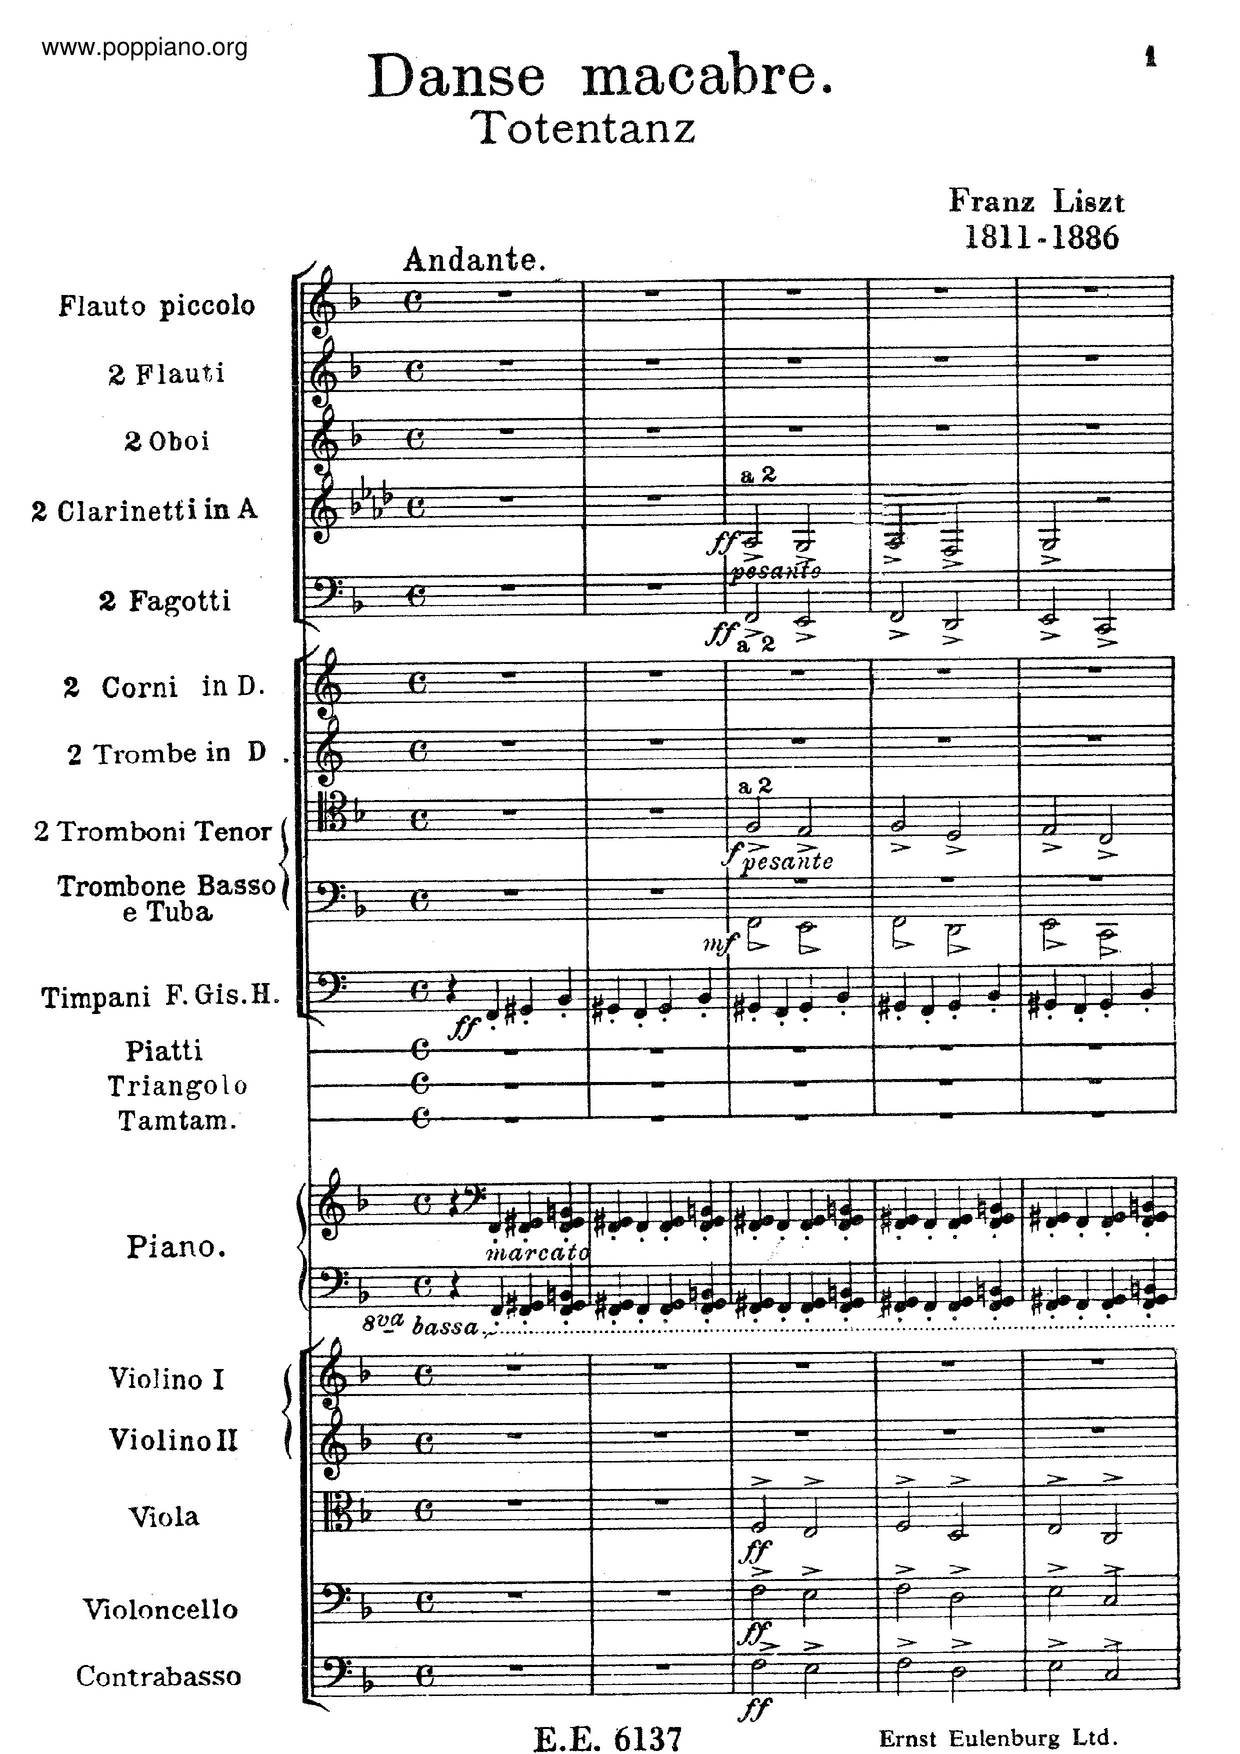 Totentanz, S. 126/2 Score